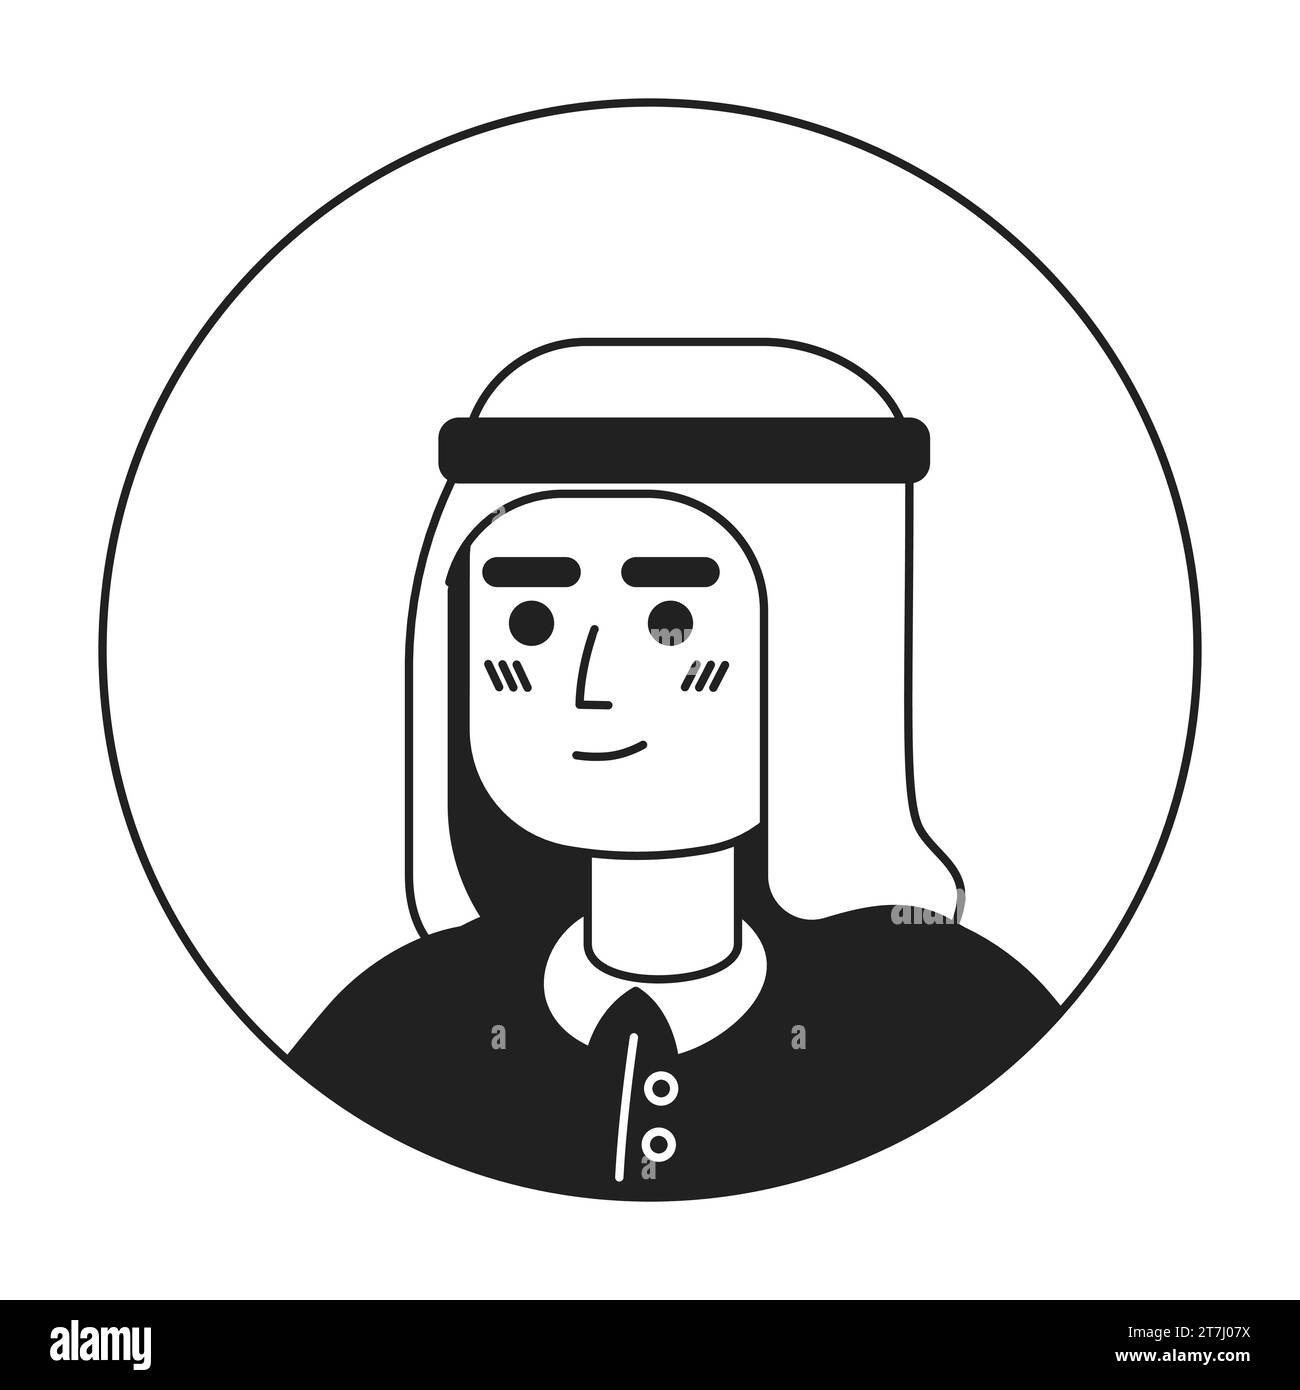 Arabischer Kopfschmuck junger erwachsener Mann entspannt starrend schwarz-weiße 2D-Vektor-Avatar-Illustration Stock Vektor